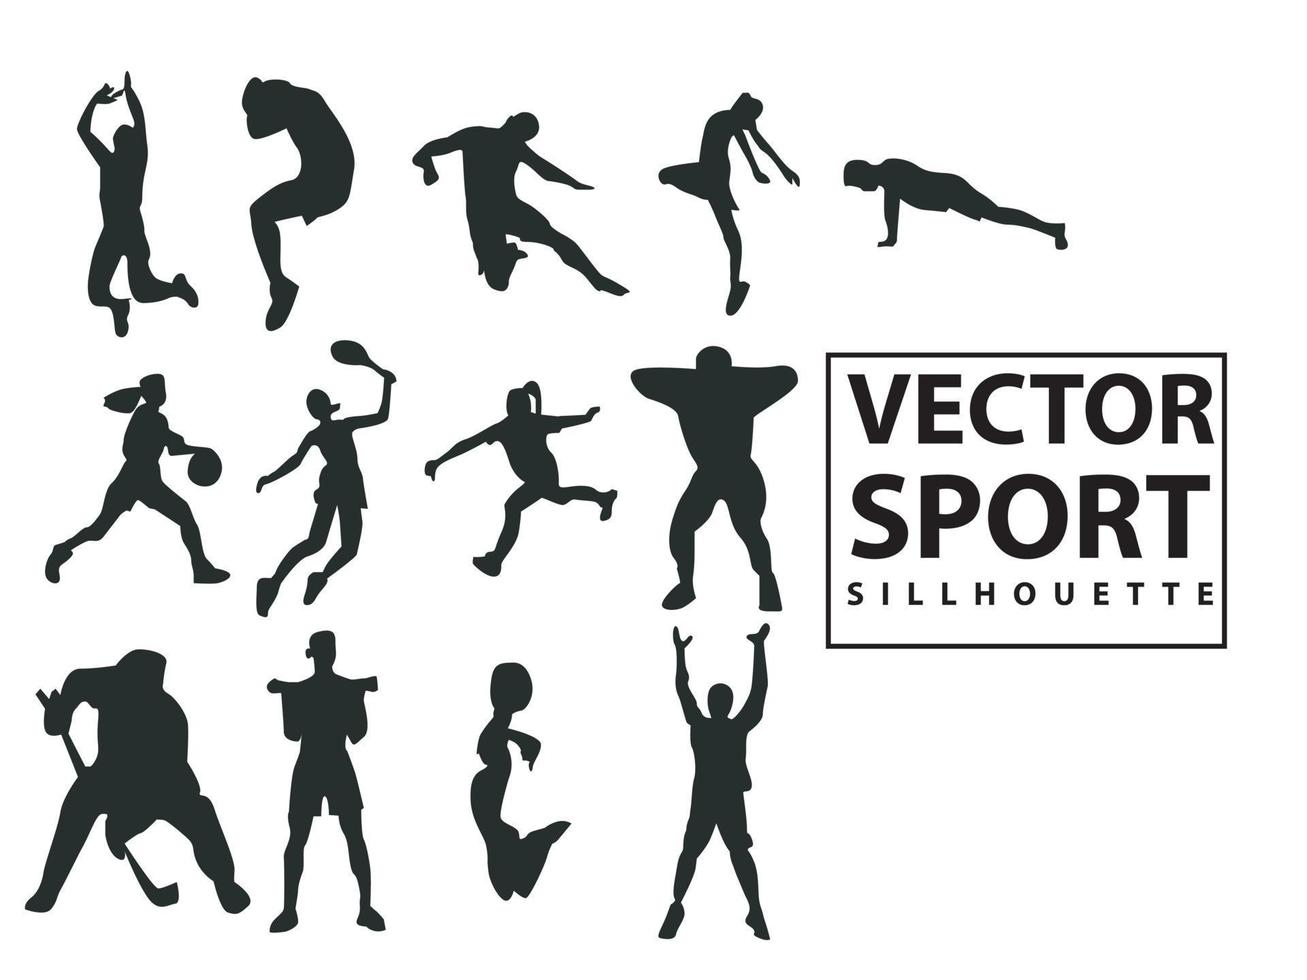 platt illustration vektor uppsättning människor sillhouette fotboll spelare med olika stil, fotboll spelare, sport, sparka, springa, hoppa isolerat på vit bakgrund